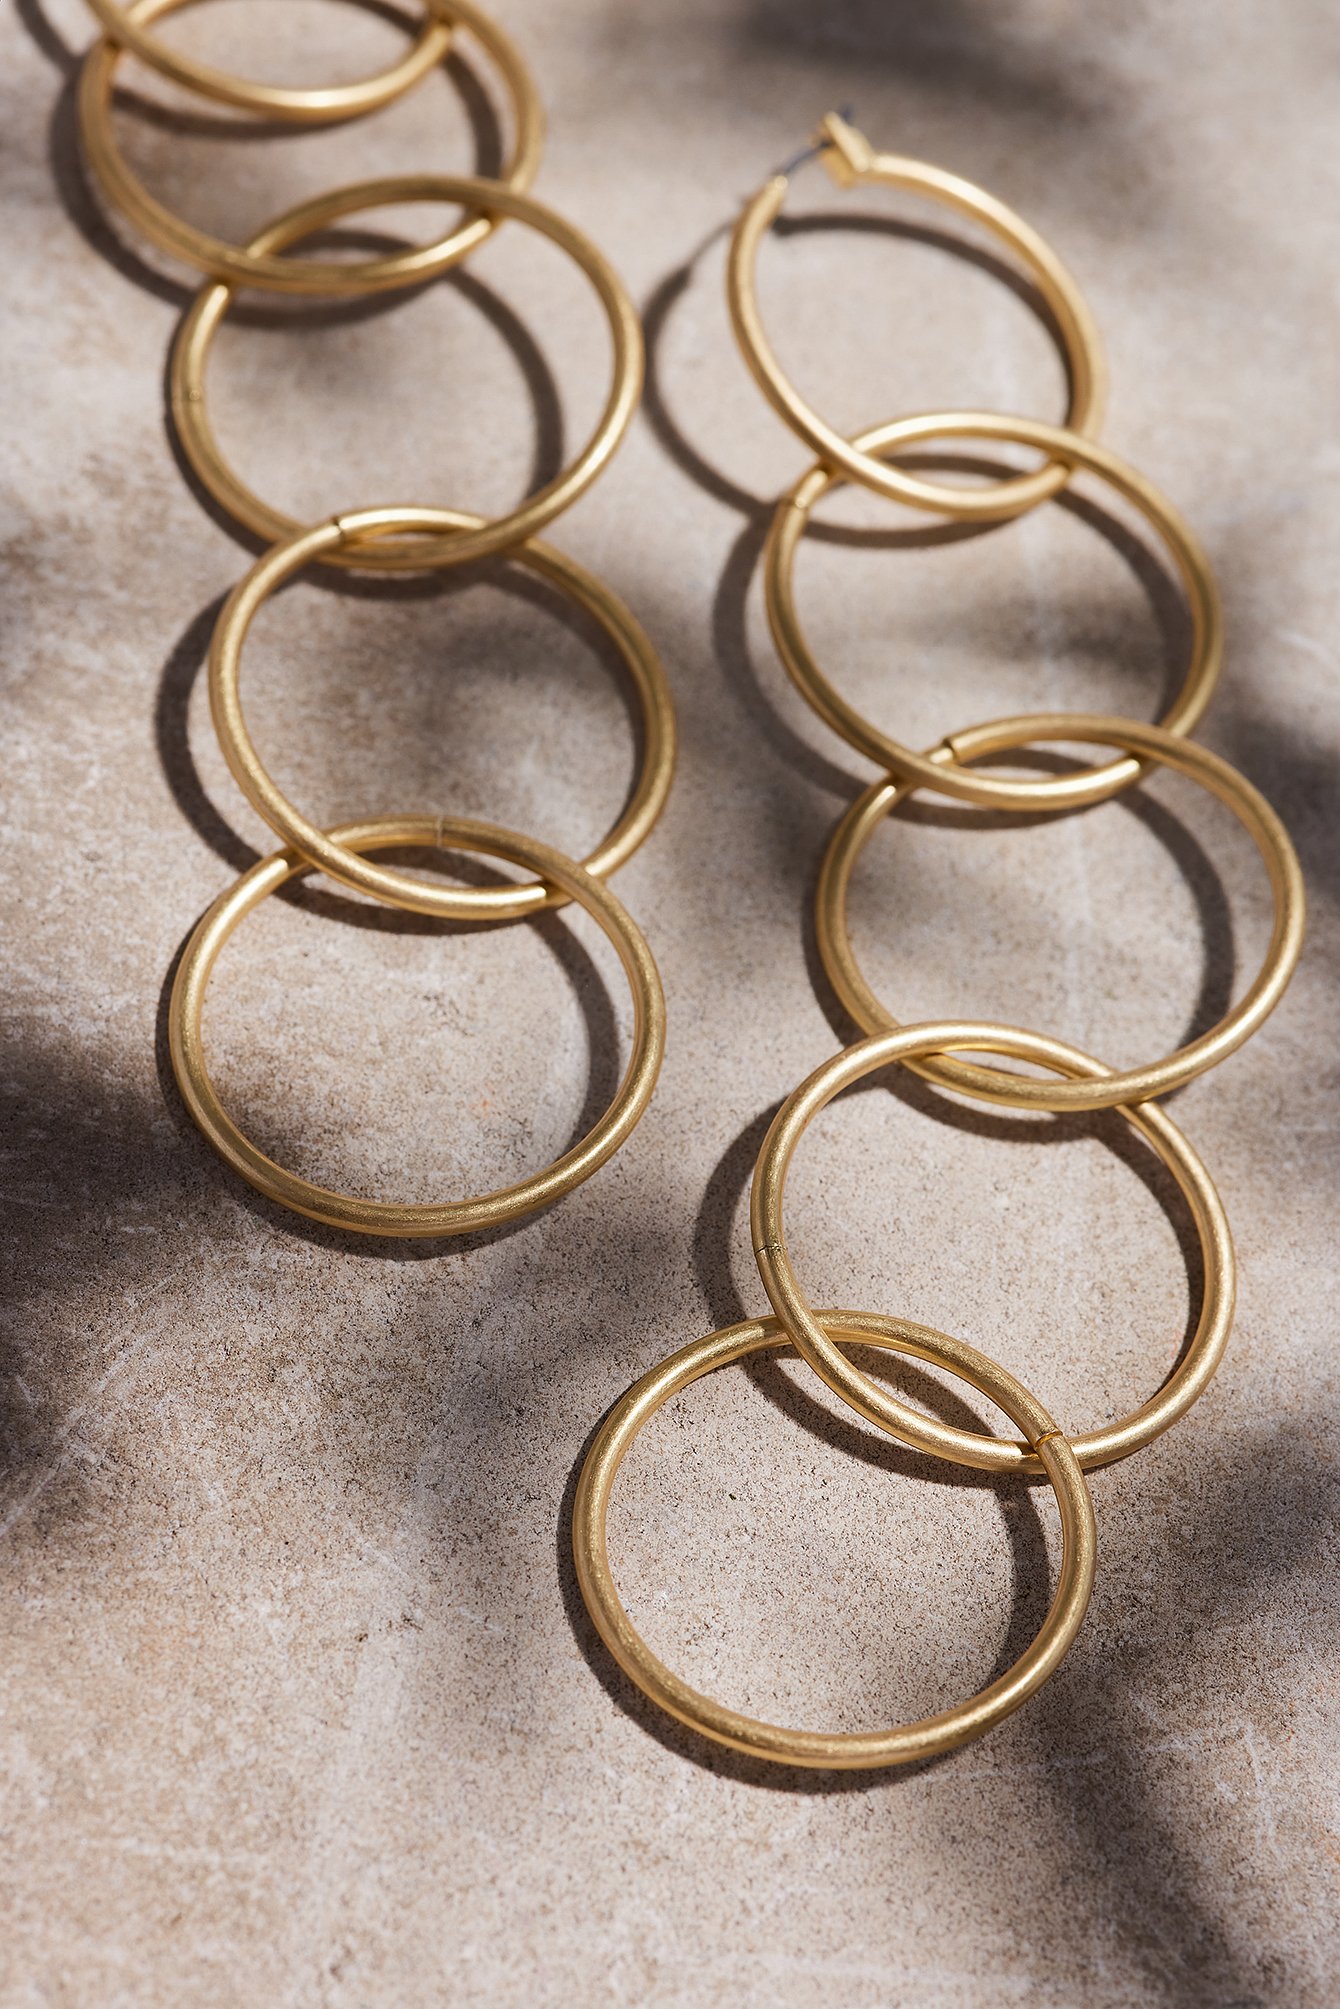 Gold Hanging Rings Earrings